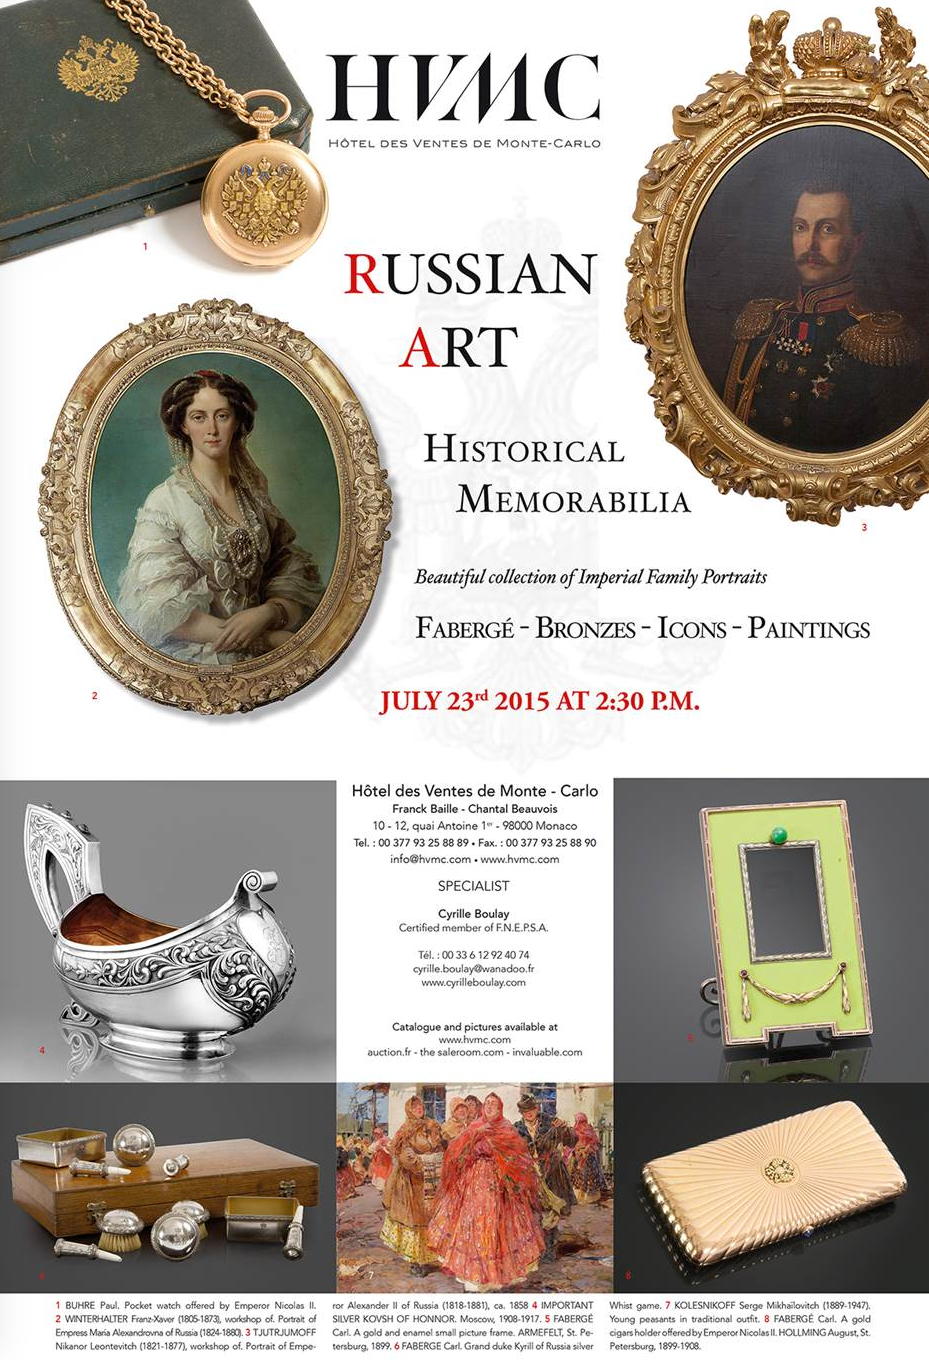 Annonce. HVMC. Hôtel des Ventes de Monte-Carlo. Russian Art. Historical memoriabilia. 2015-07-23